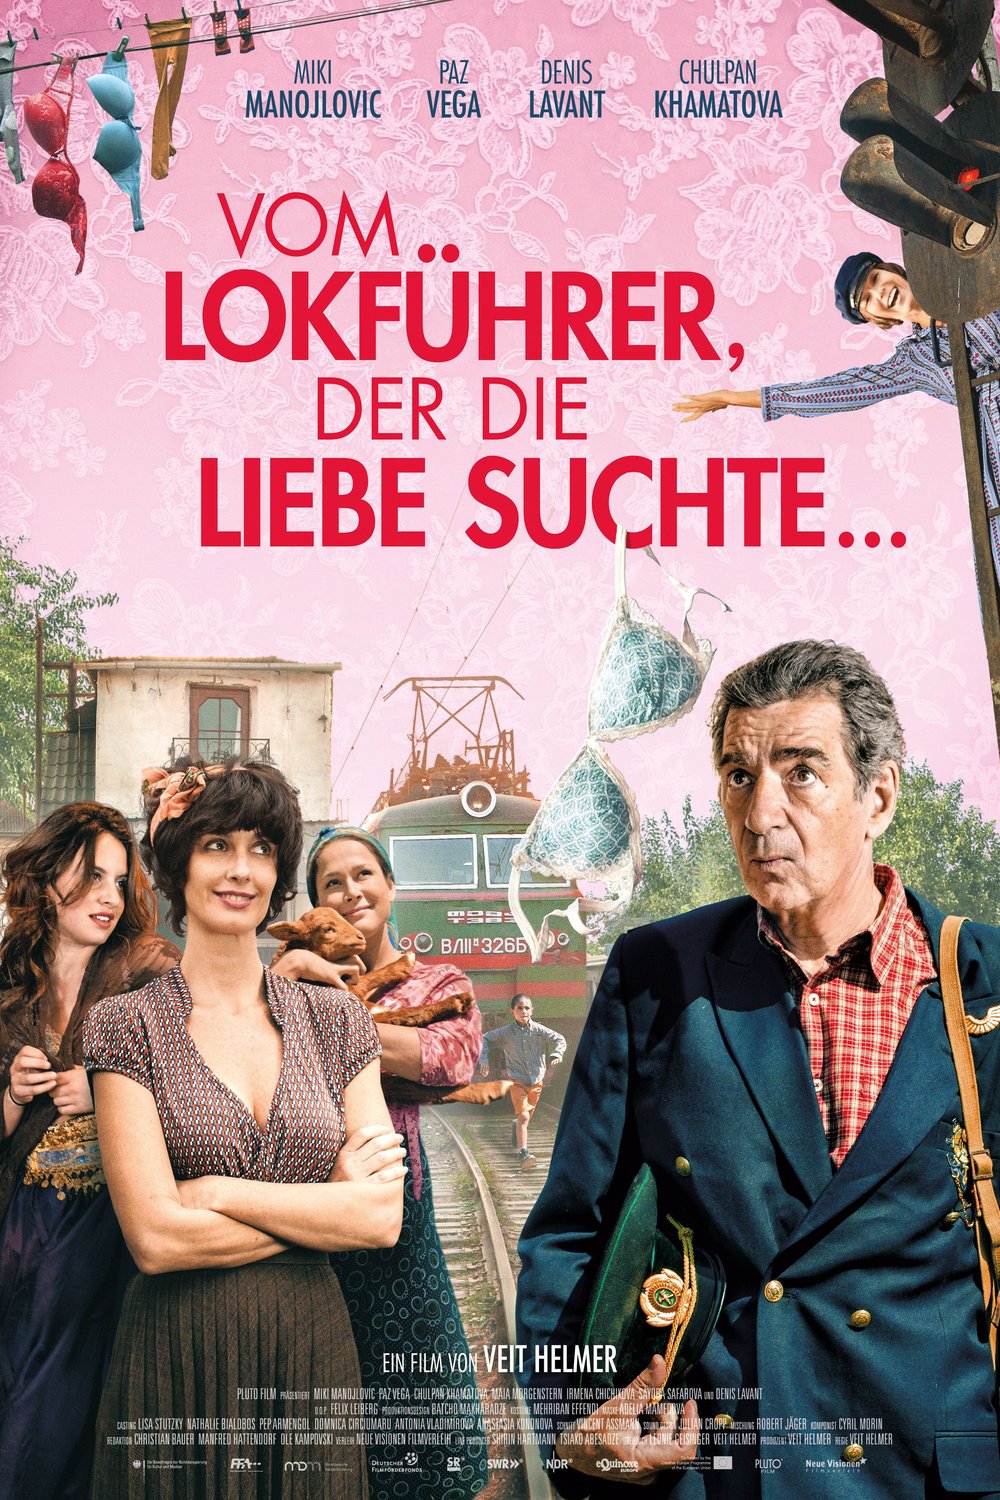 German poster of the movie Vom Lokführer, der die Liebe suchte...